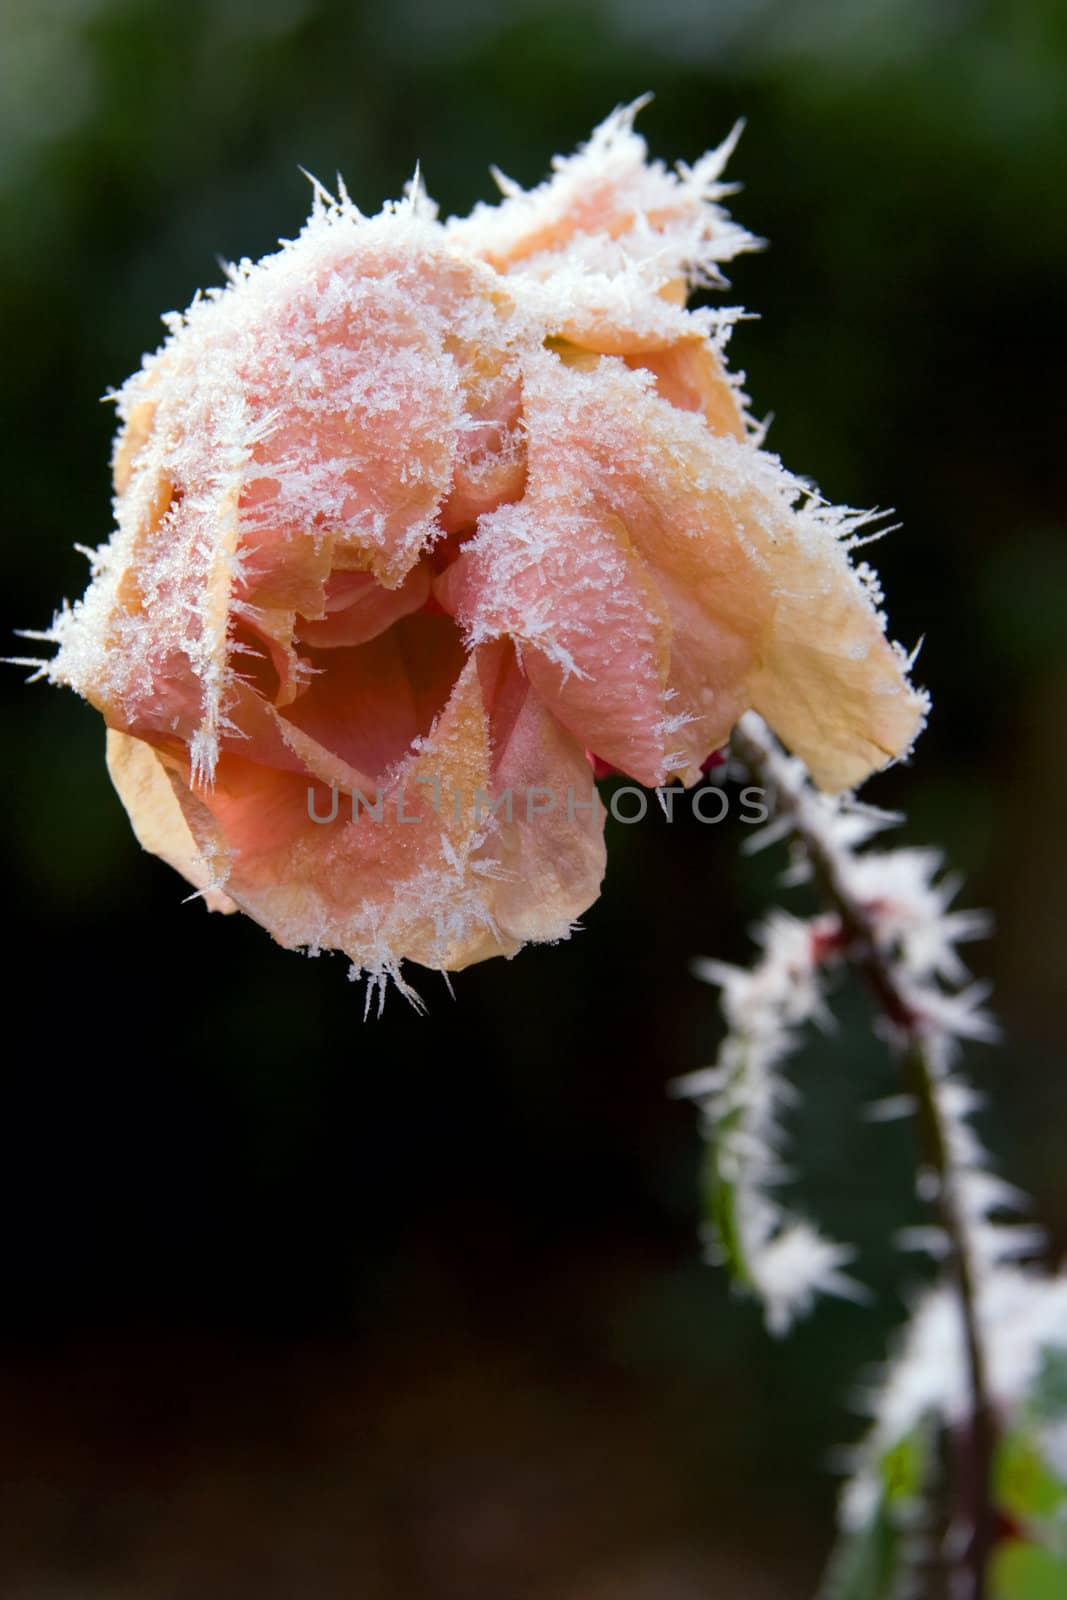 A frozen rose in winter - seasonal picture